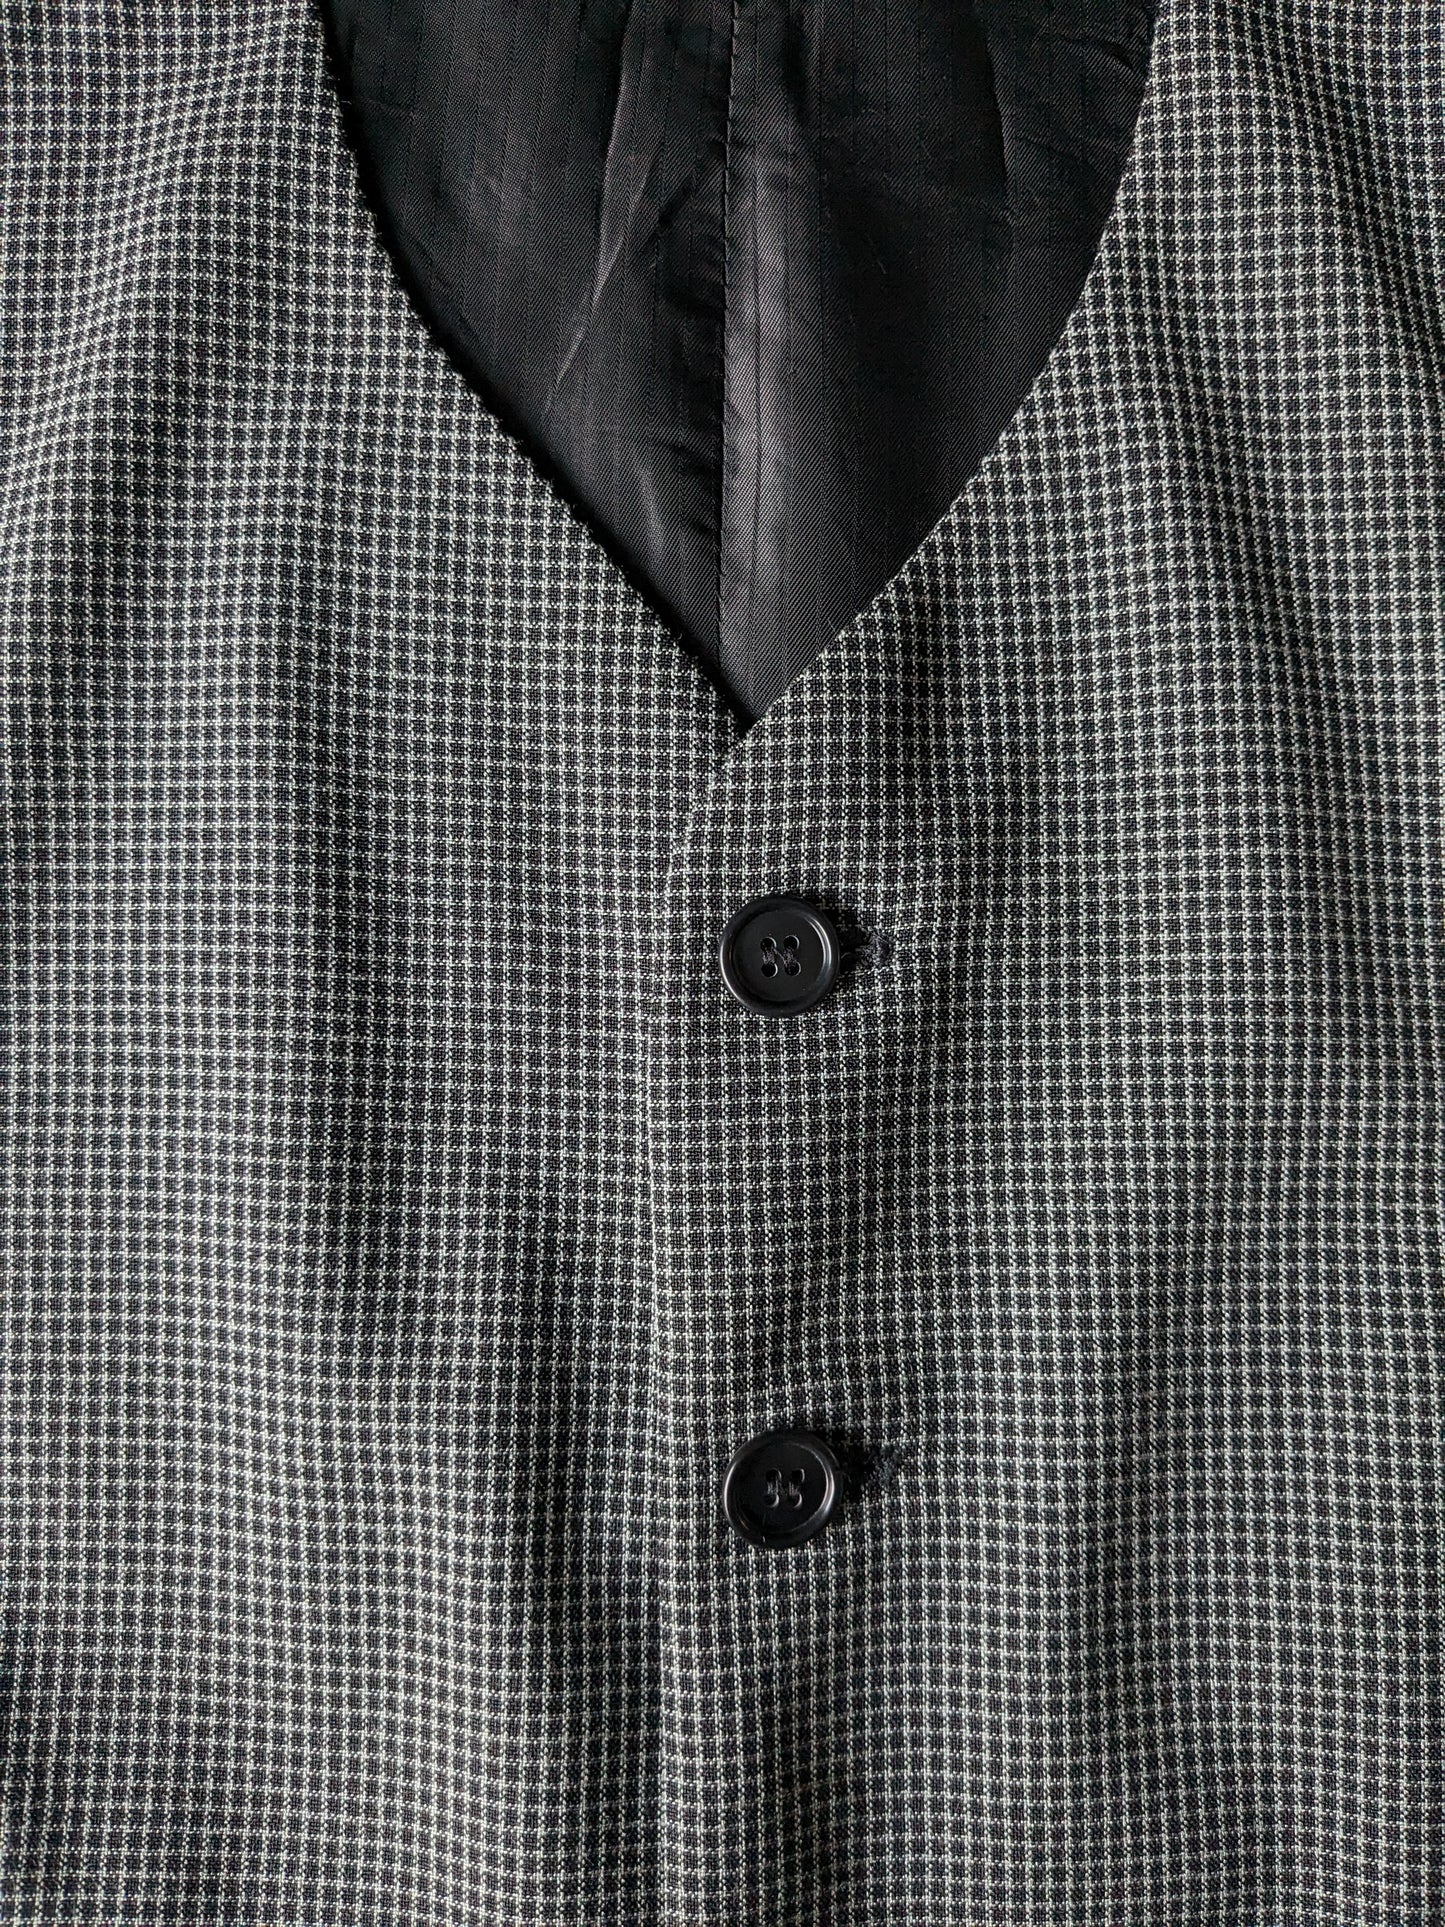 Gilet Vintage Angelo Litrico. À carreaux gris noir. Taille 48 / M.